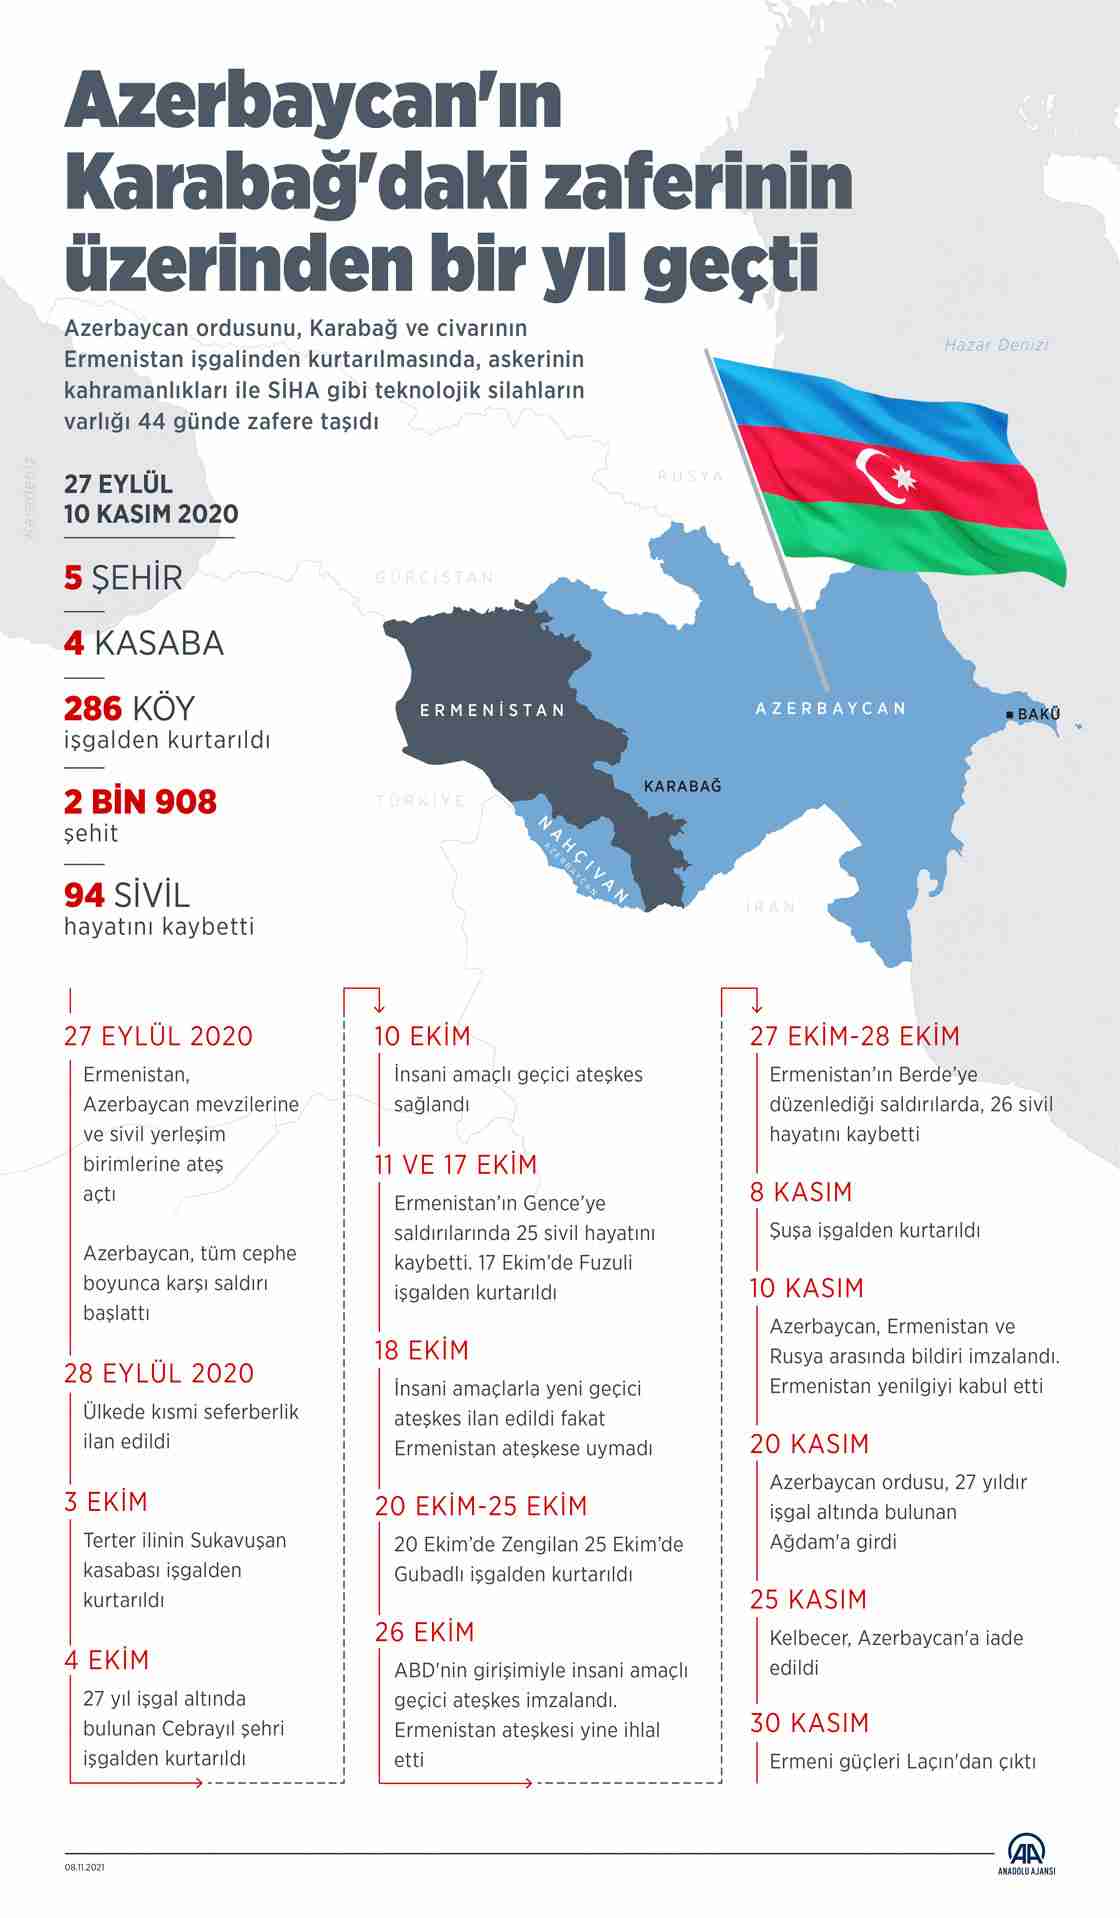 Karabağ'daki Azerbaycan zaferinin üzerinden bir yıl geçti